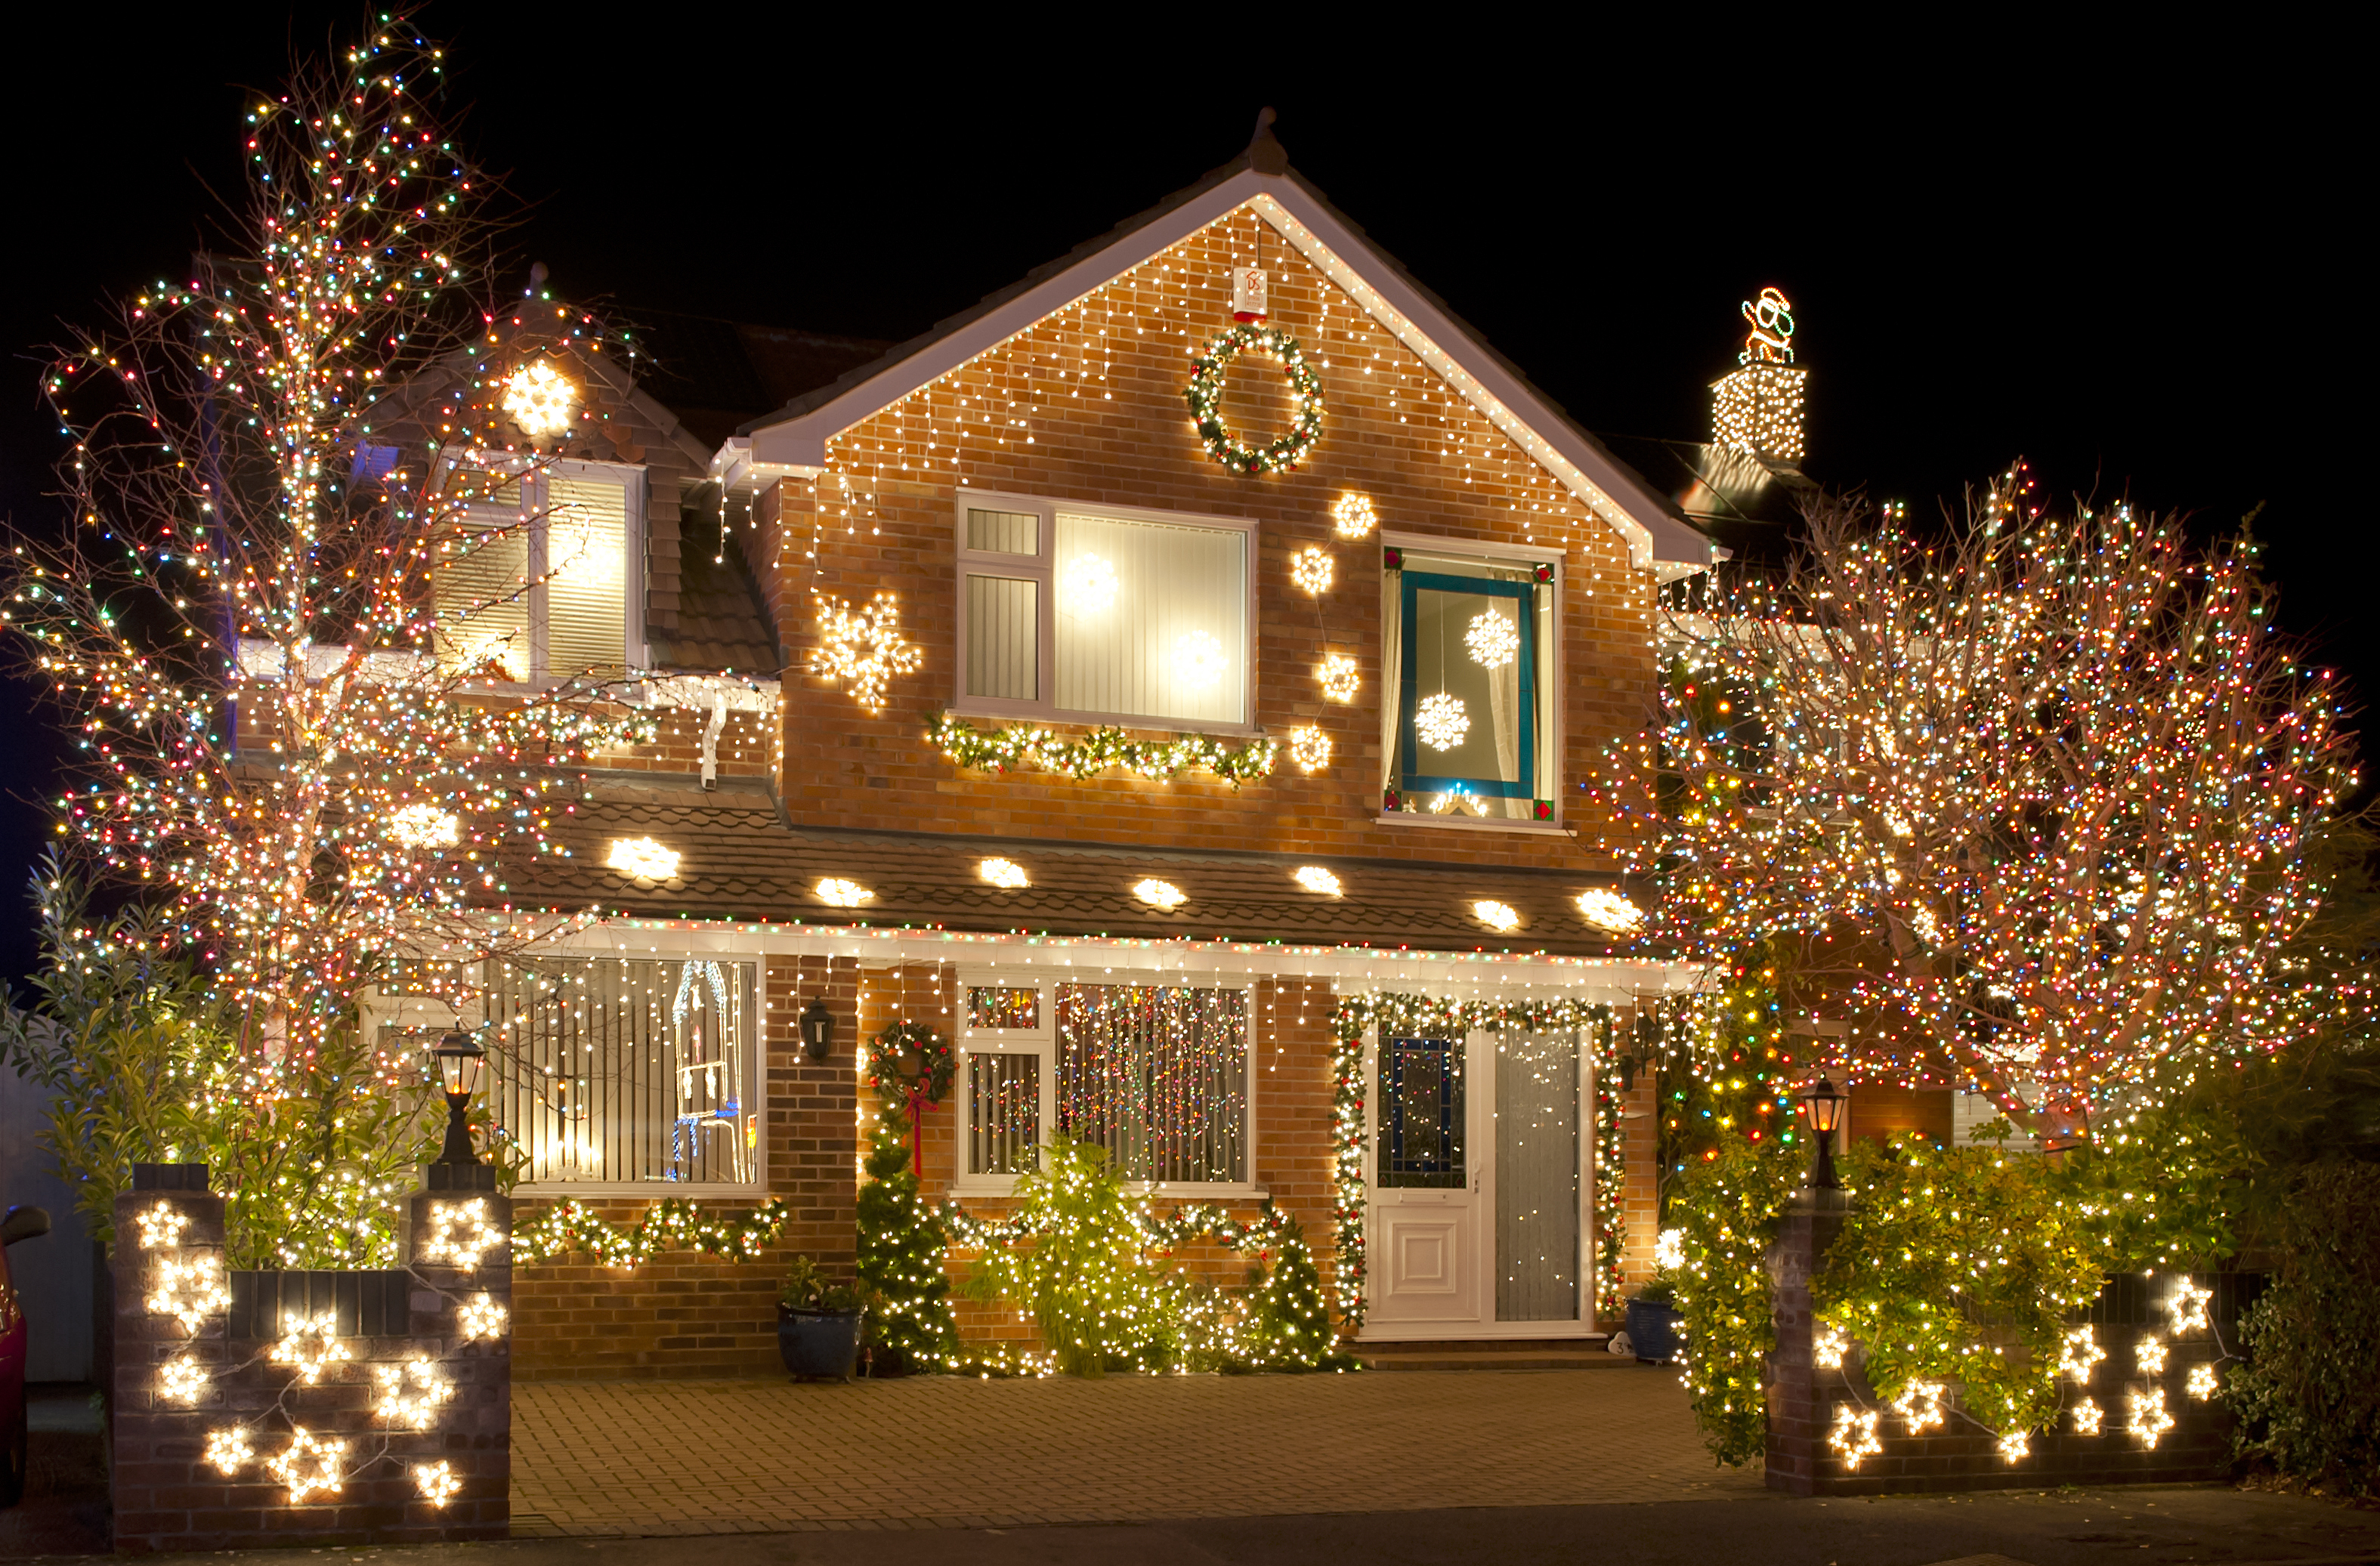 Christmas Lights | Source: Shutterstock